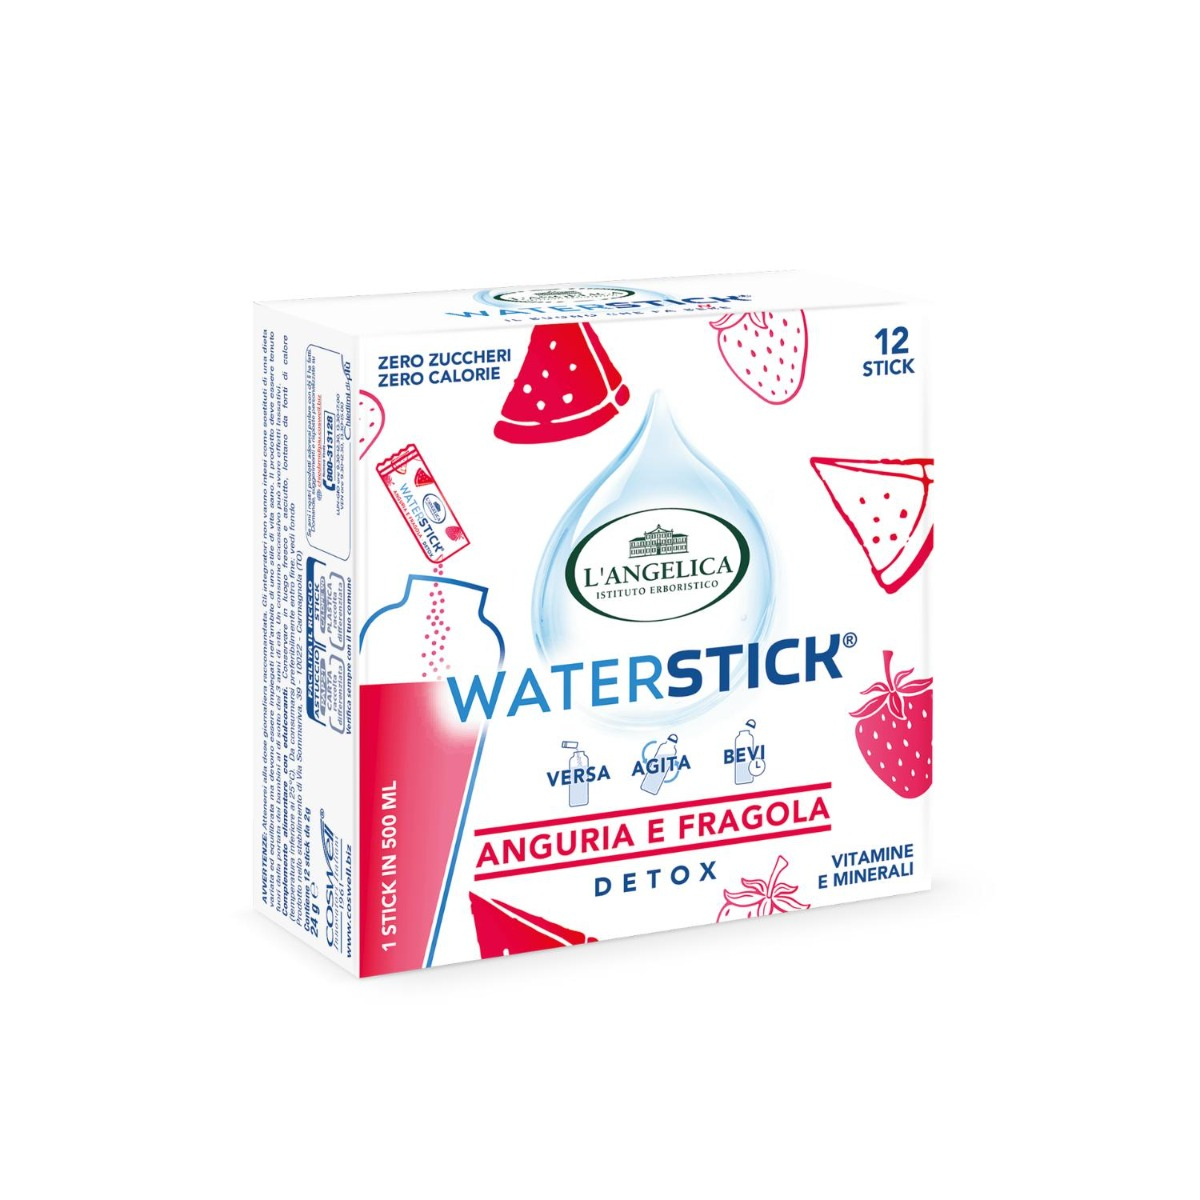 Waterstick - Anguria e Fragola